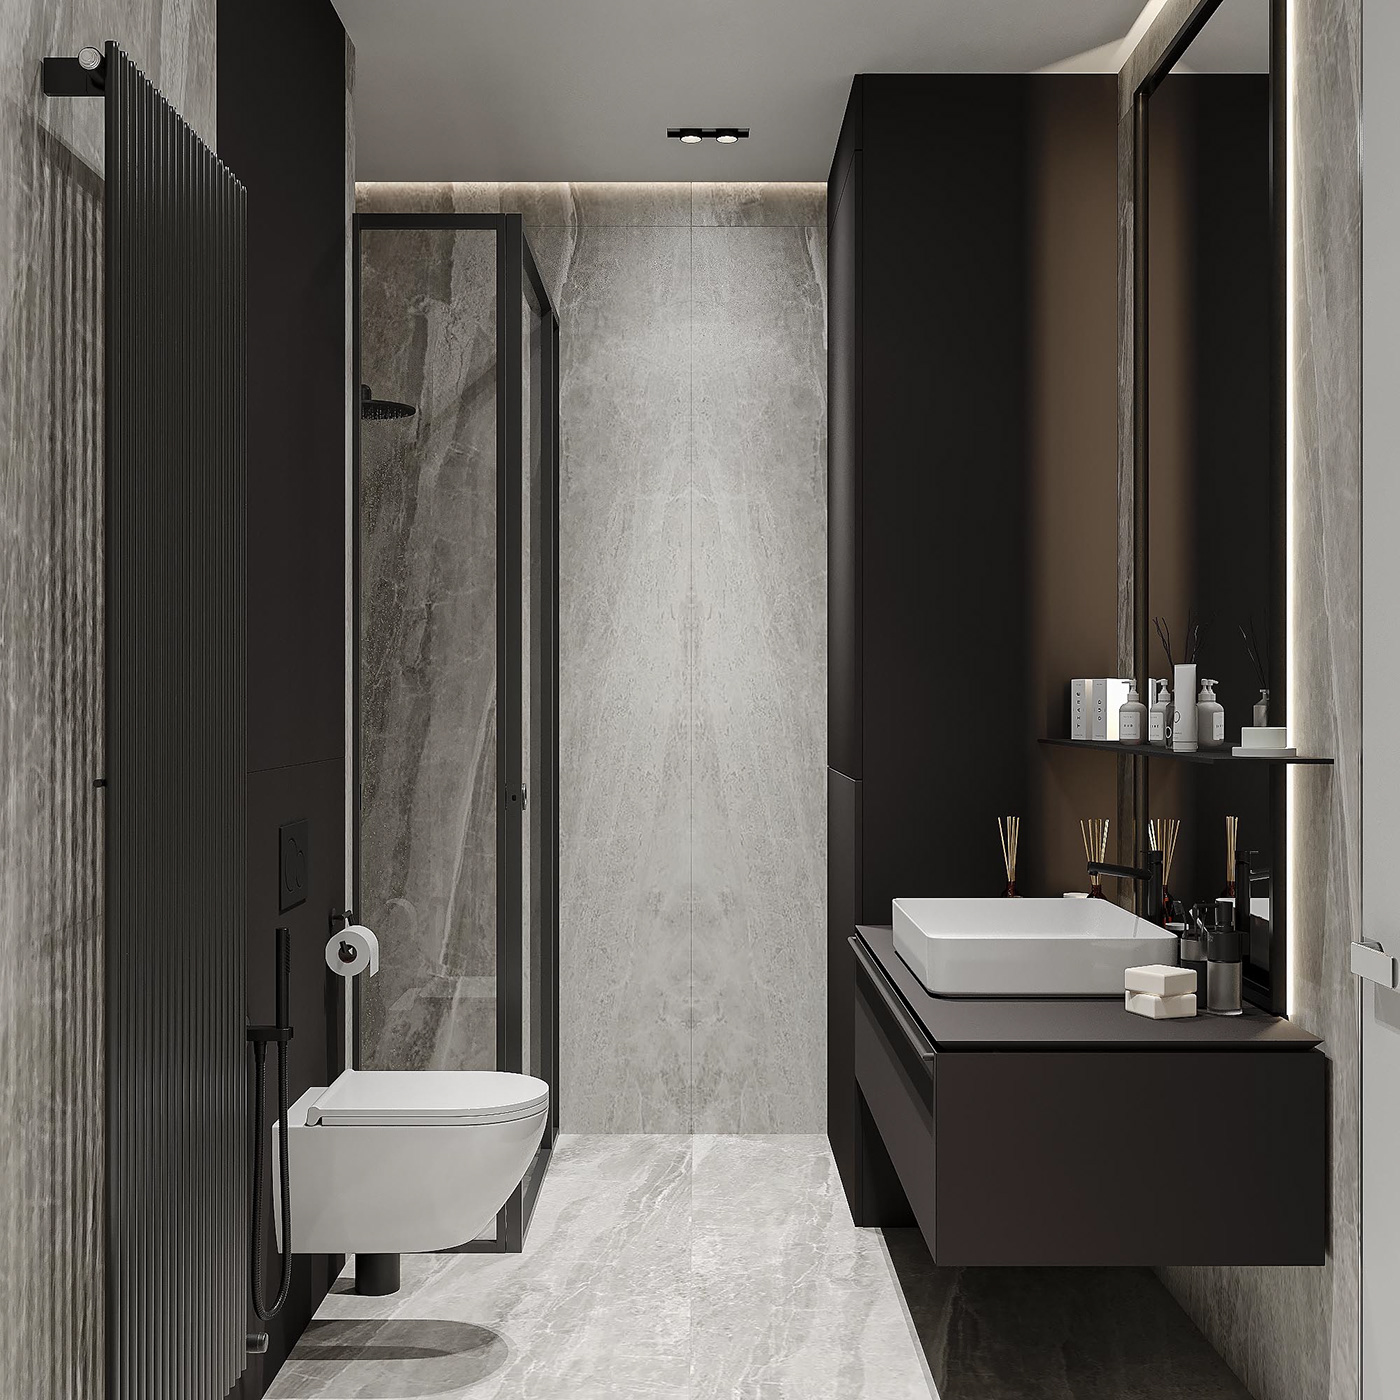 3ds max corona render  Interior interior design  modern design apartment